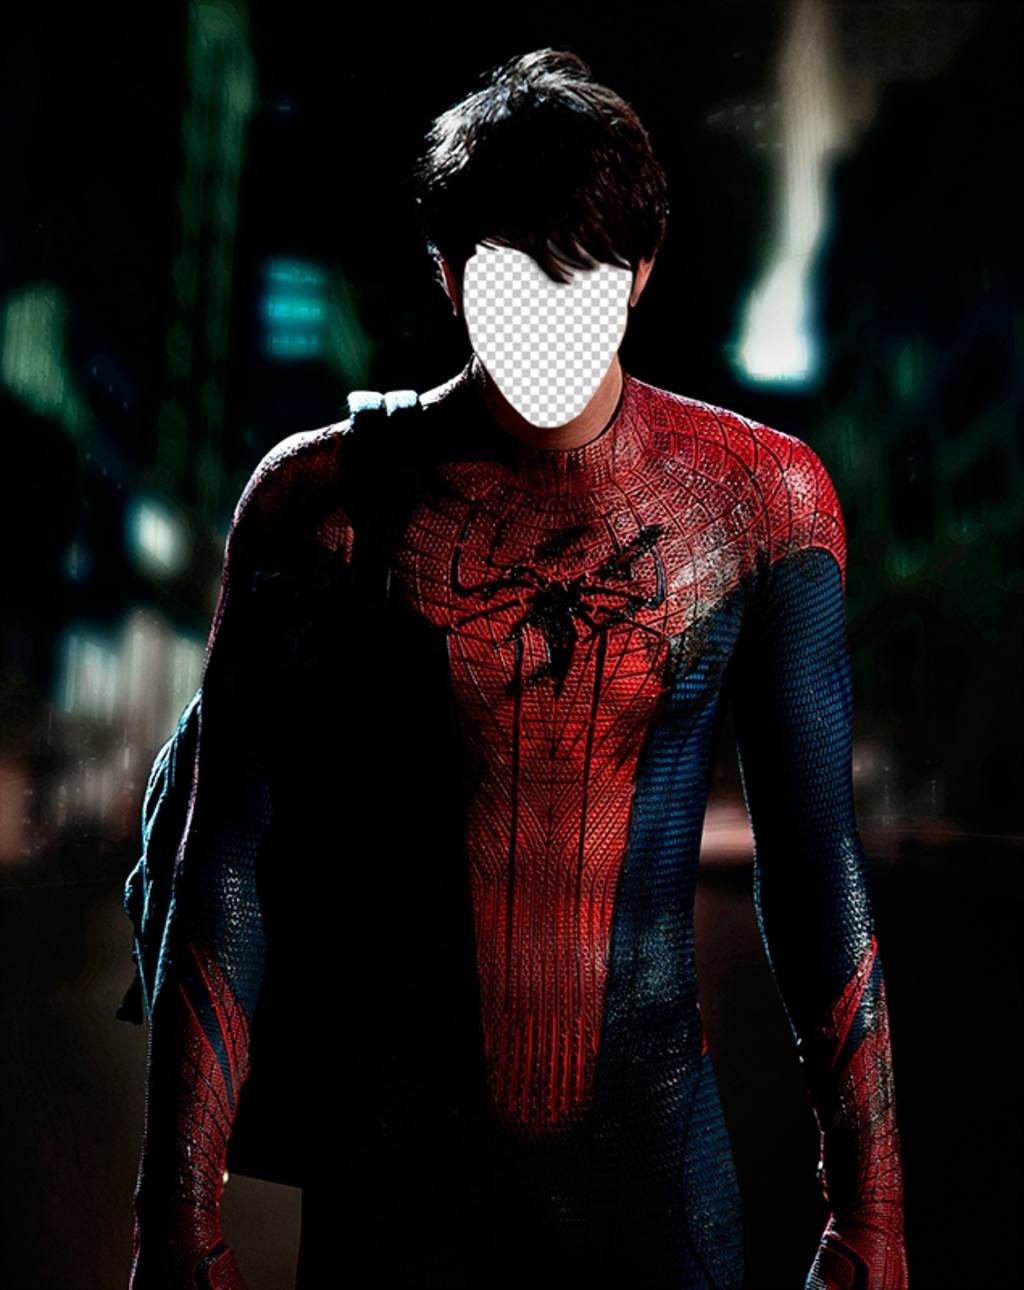 Con questo fotomontaggio mettere la vostra faccia sul corpo di Spiderman ..